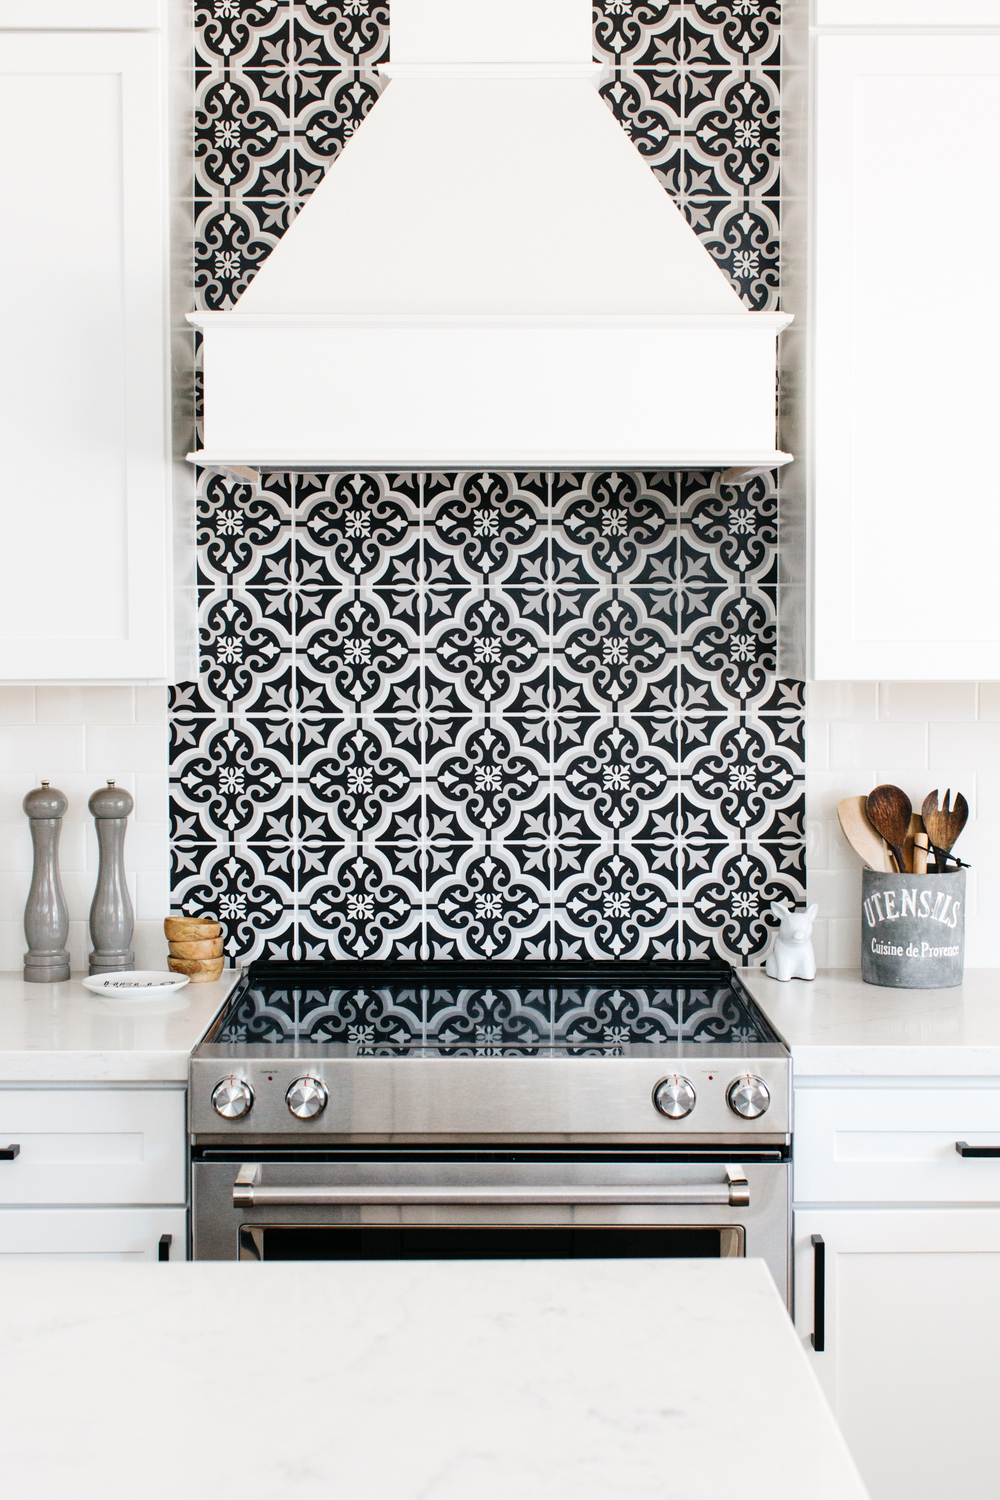 black and white patterned tile backsplash